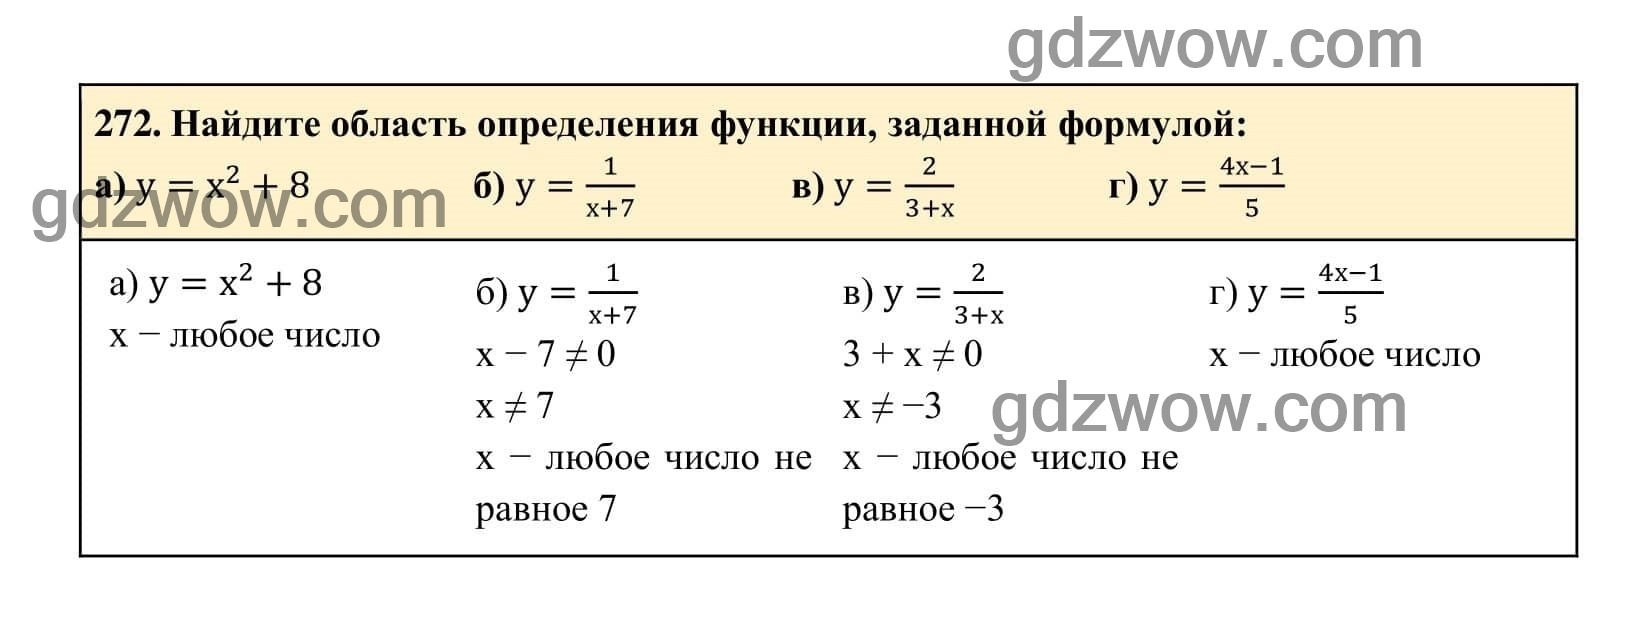 Упражнение 272 - ГДЗ по Алгебре 7 класс Учебник Макарычев (решебник) - GDZwow